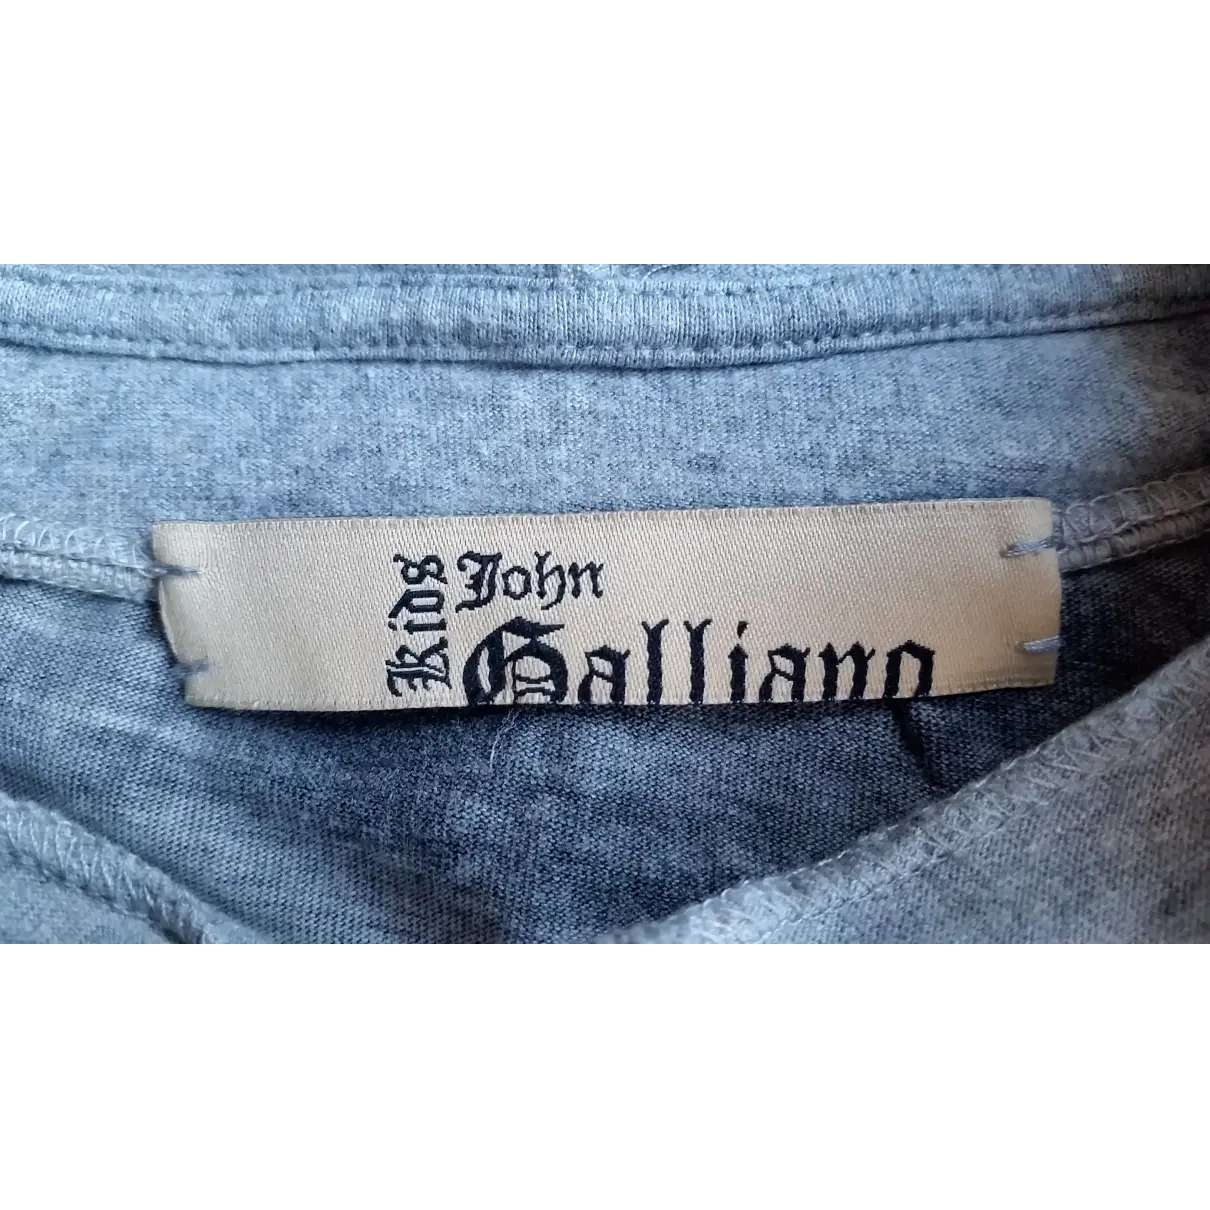 Luxury John Galliano Tops Kids - Vintage